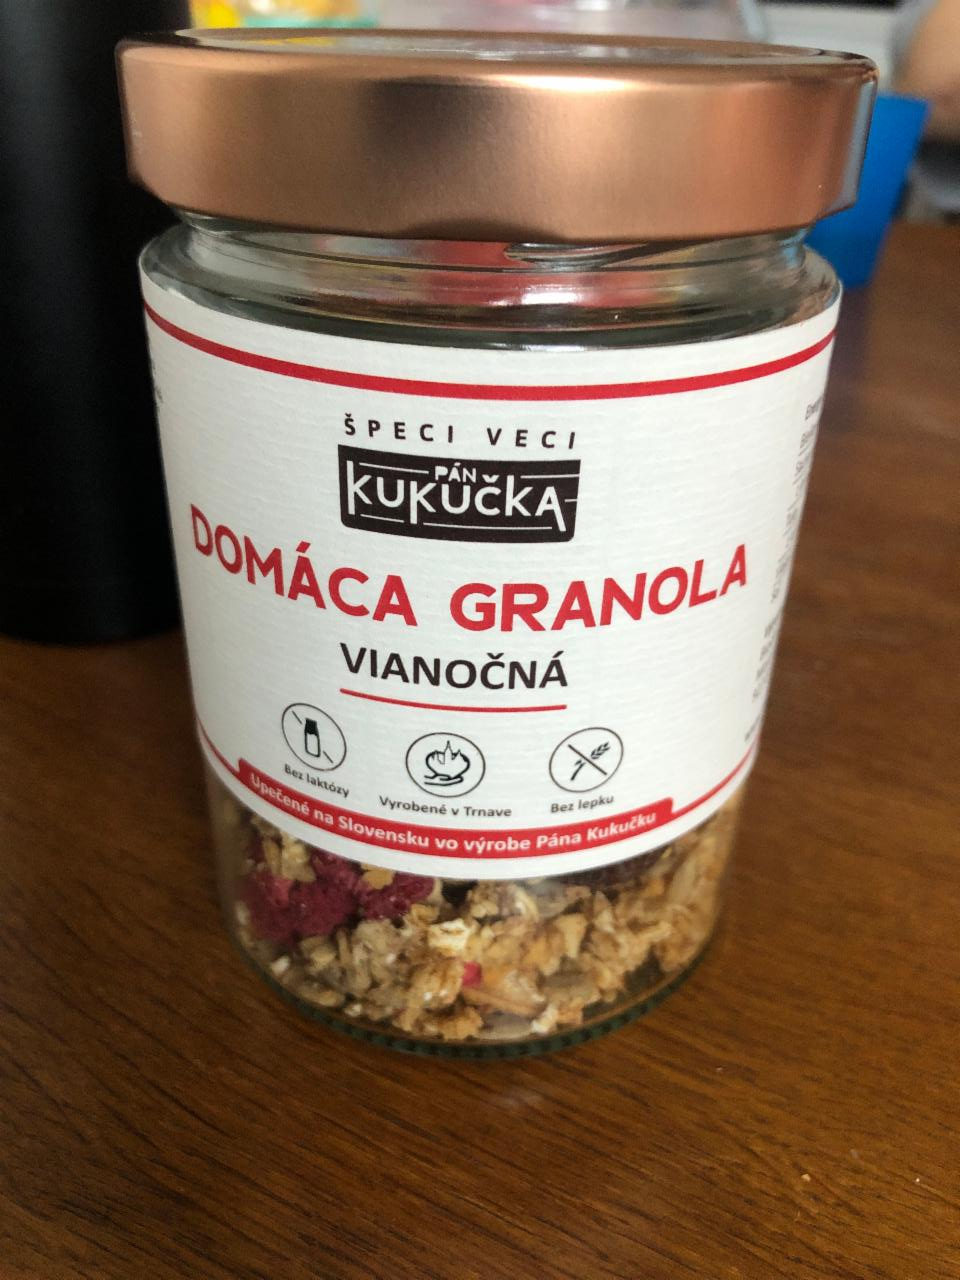 Fotografie - Domáca granola Vianočná Pán Kukučka